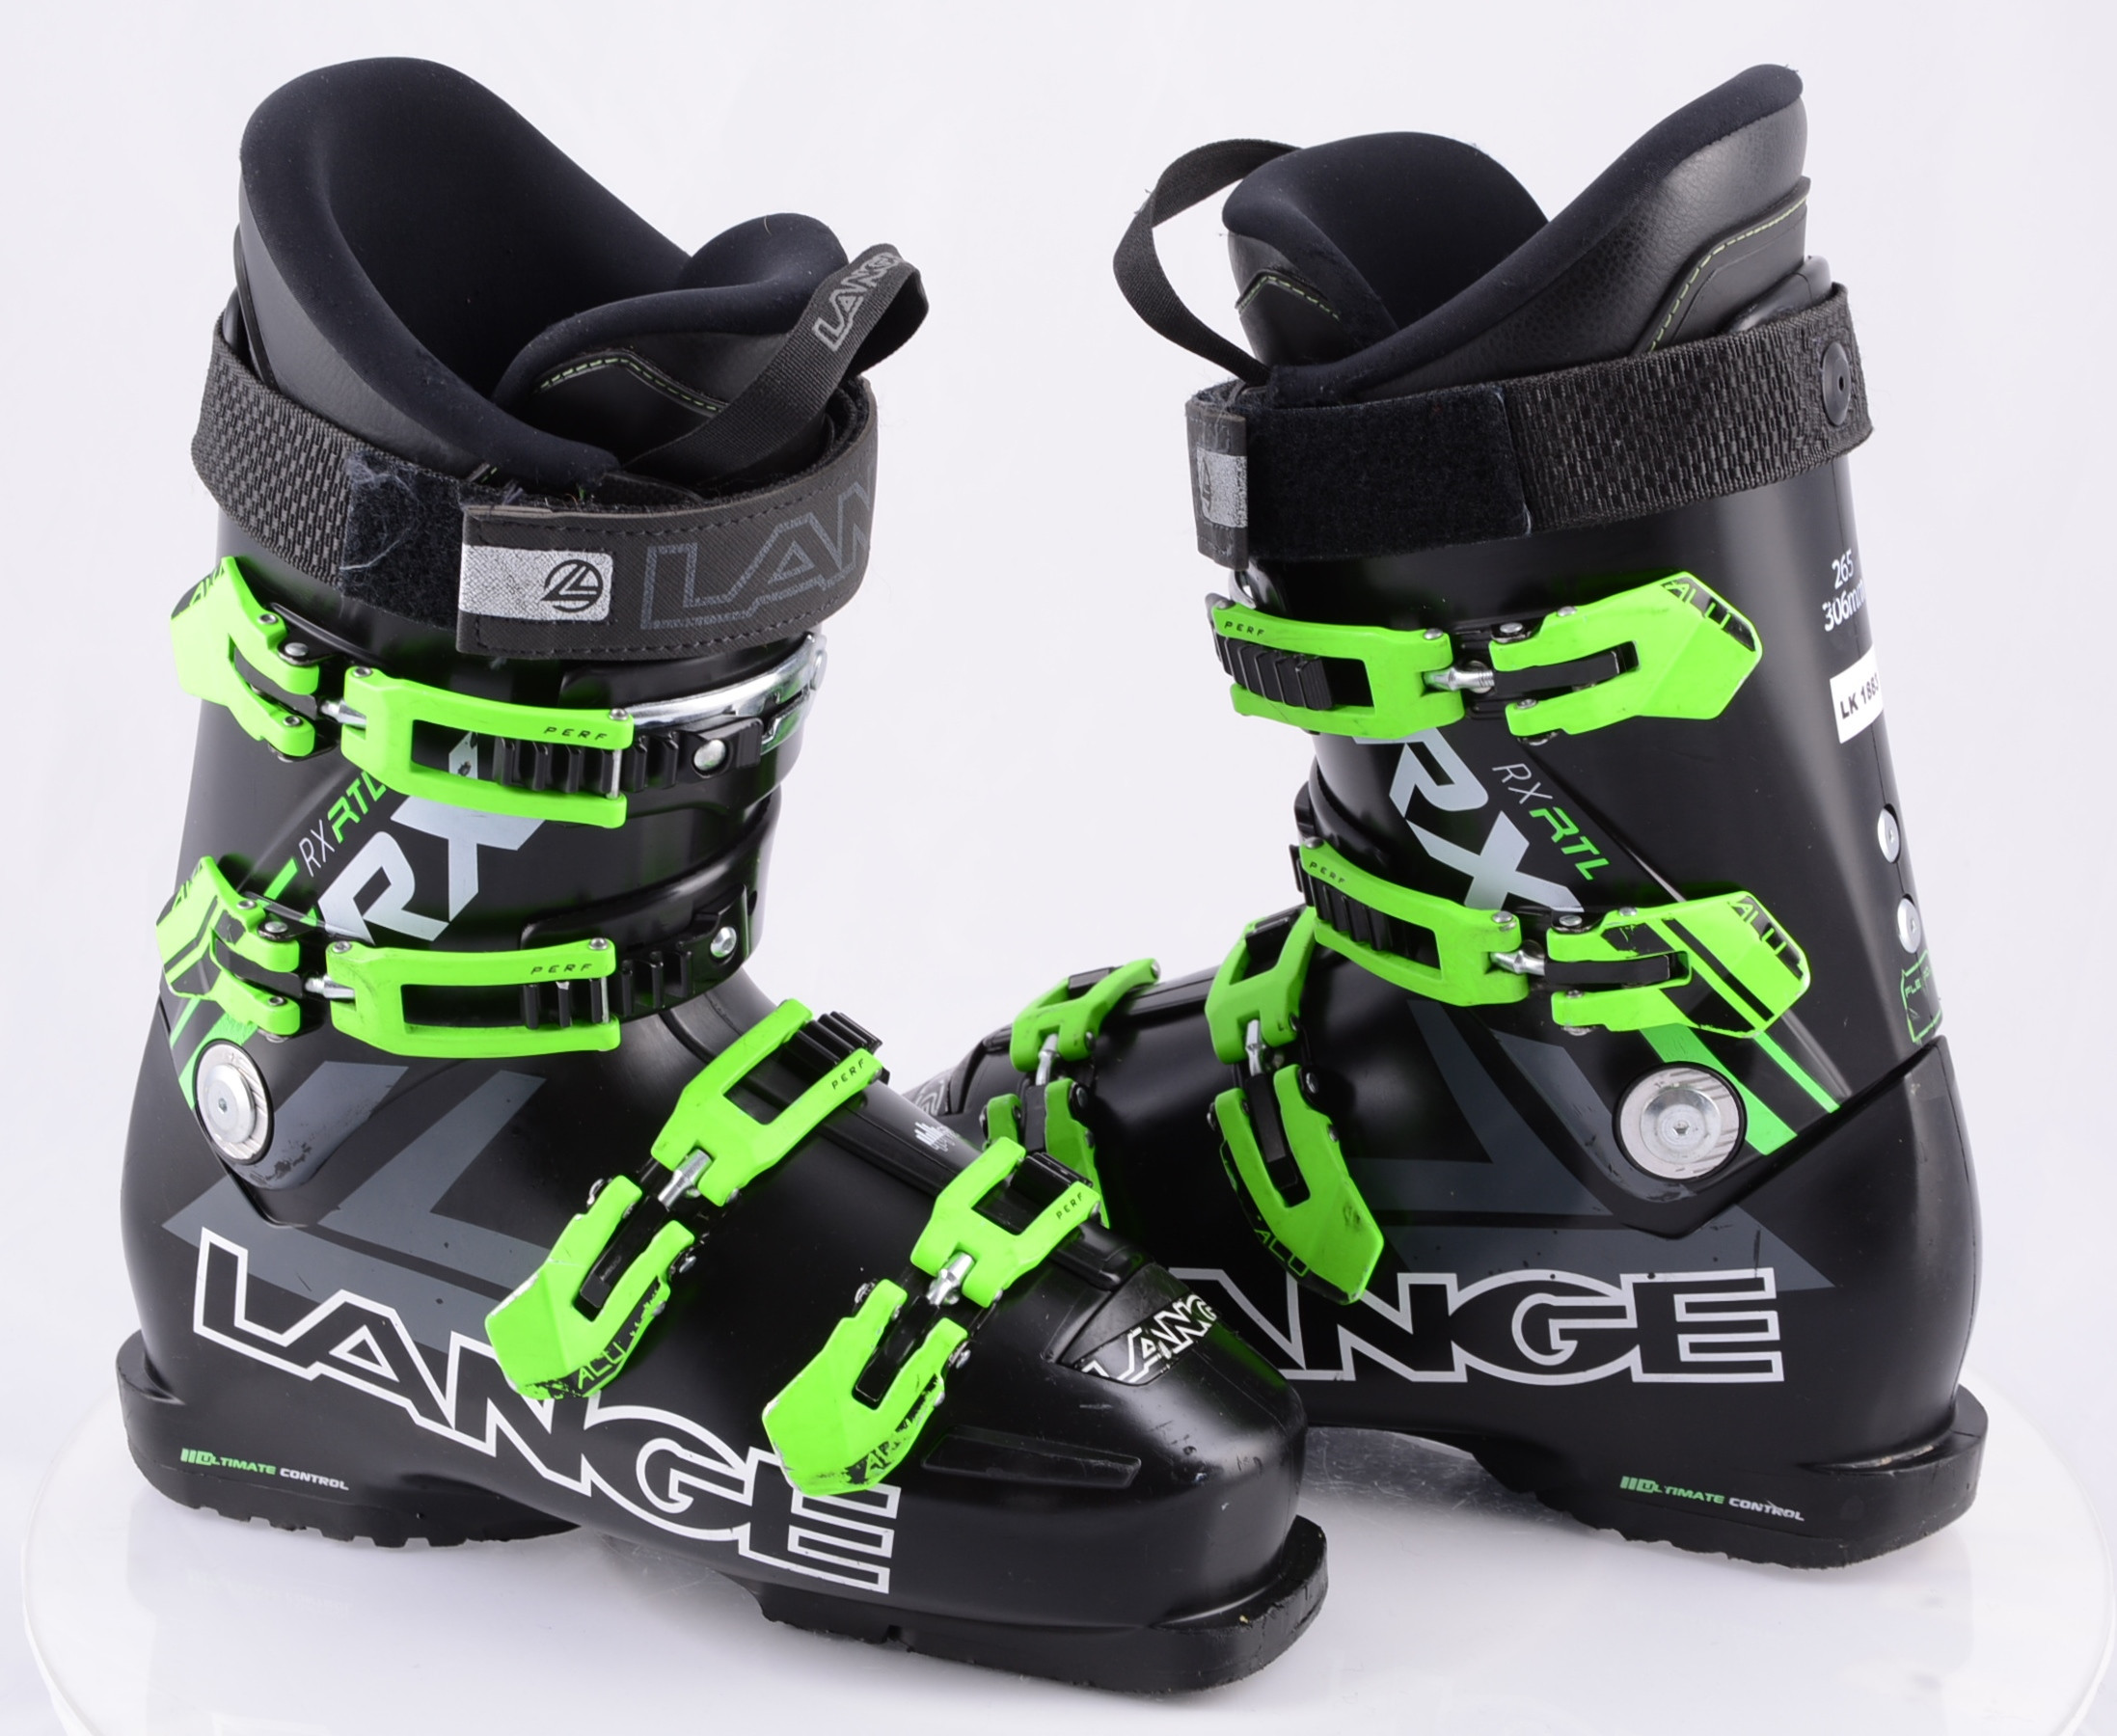 Onafhankelijk parfum Rang ski boots LANGE RX 100/90 BLACK/green, ULTIMATE control, FLEX adj. ALU,  CANTING, CONTROL fit - Mardosport.com